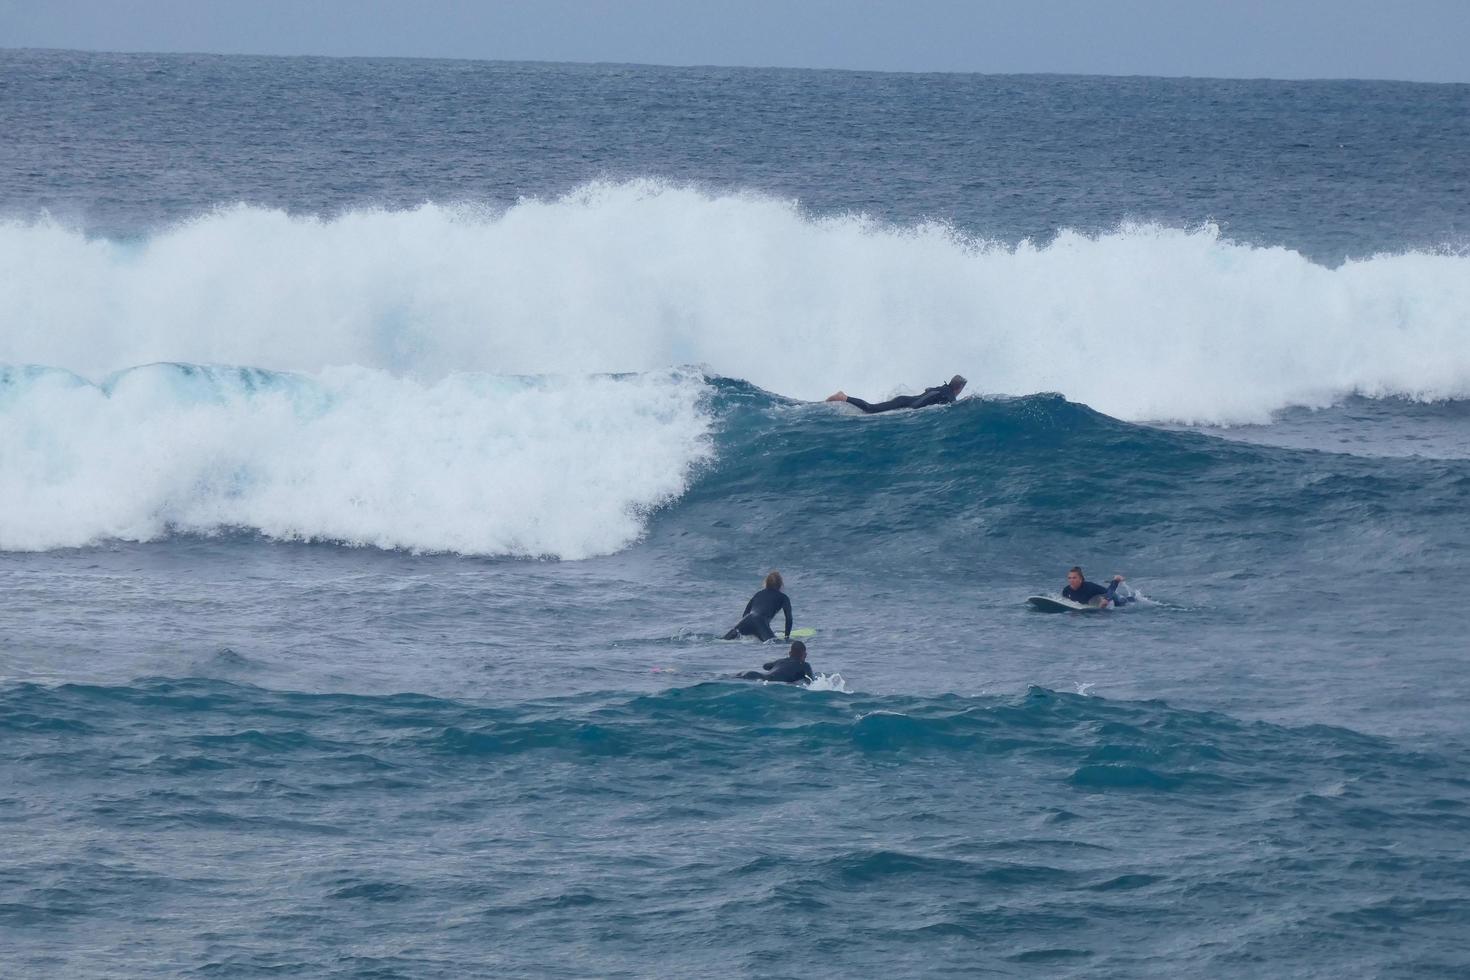 ung idrottare praktiserande de vatten sport av surfing foto